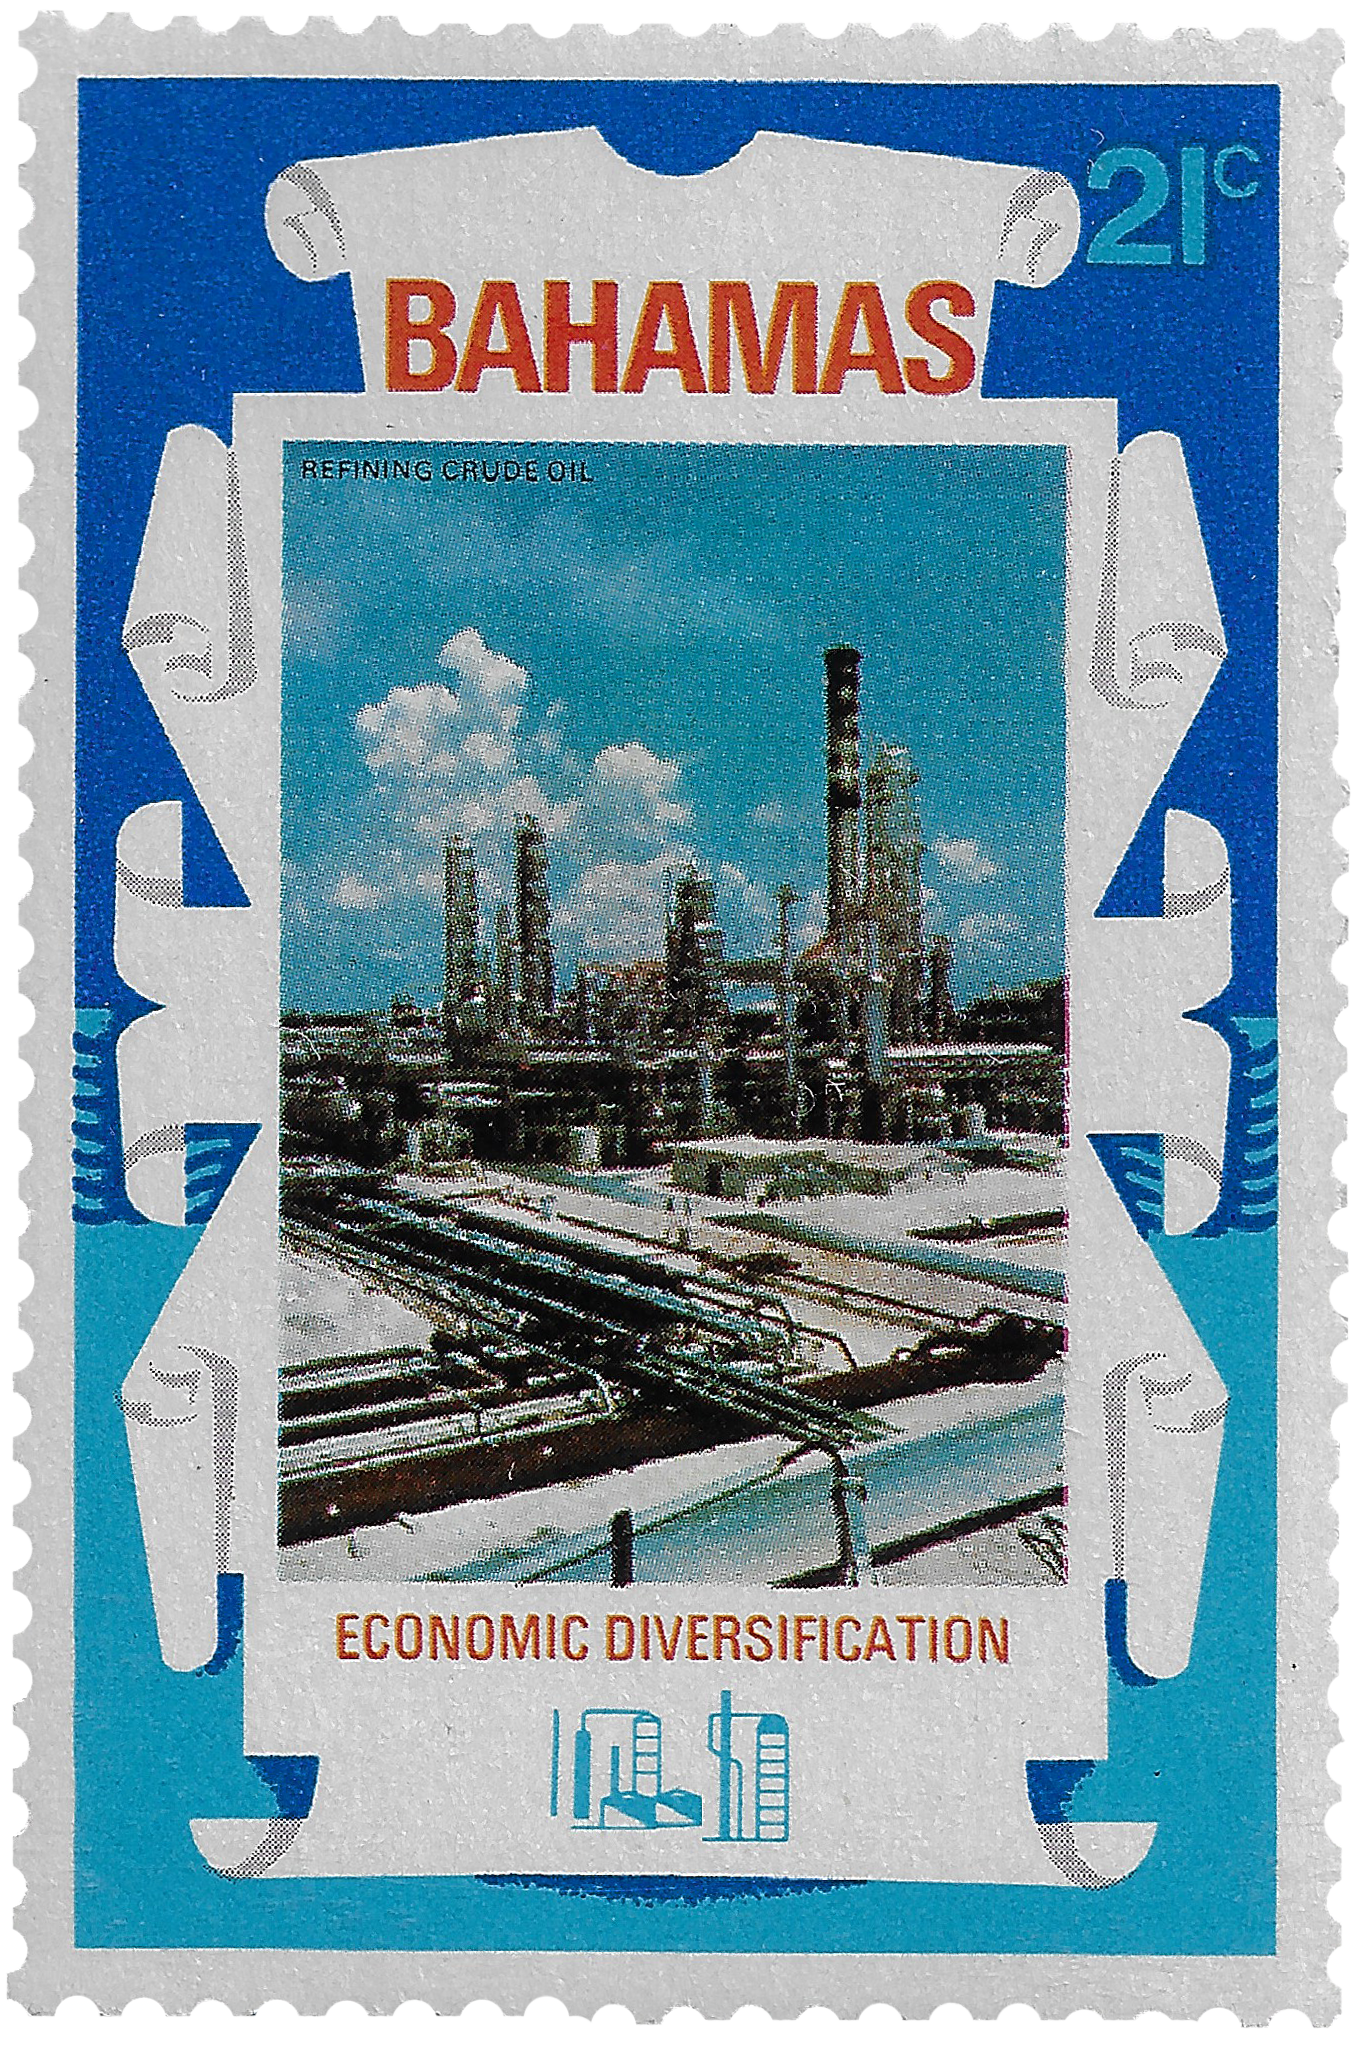 21c 1975, Economic Diversification, Refining Crude Oil